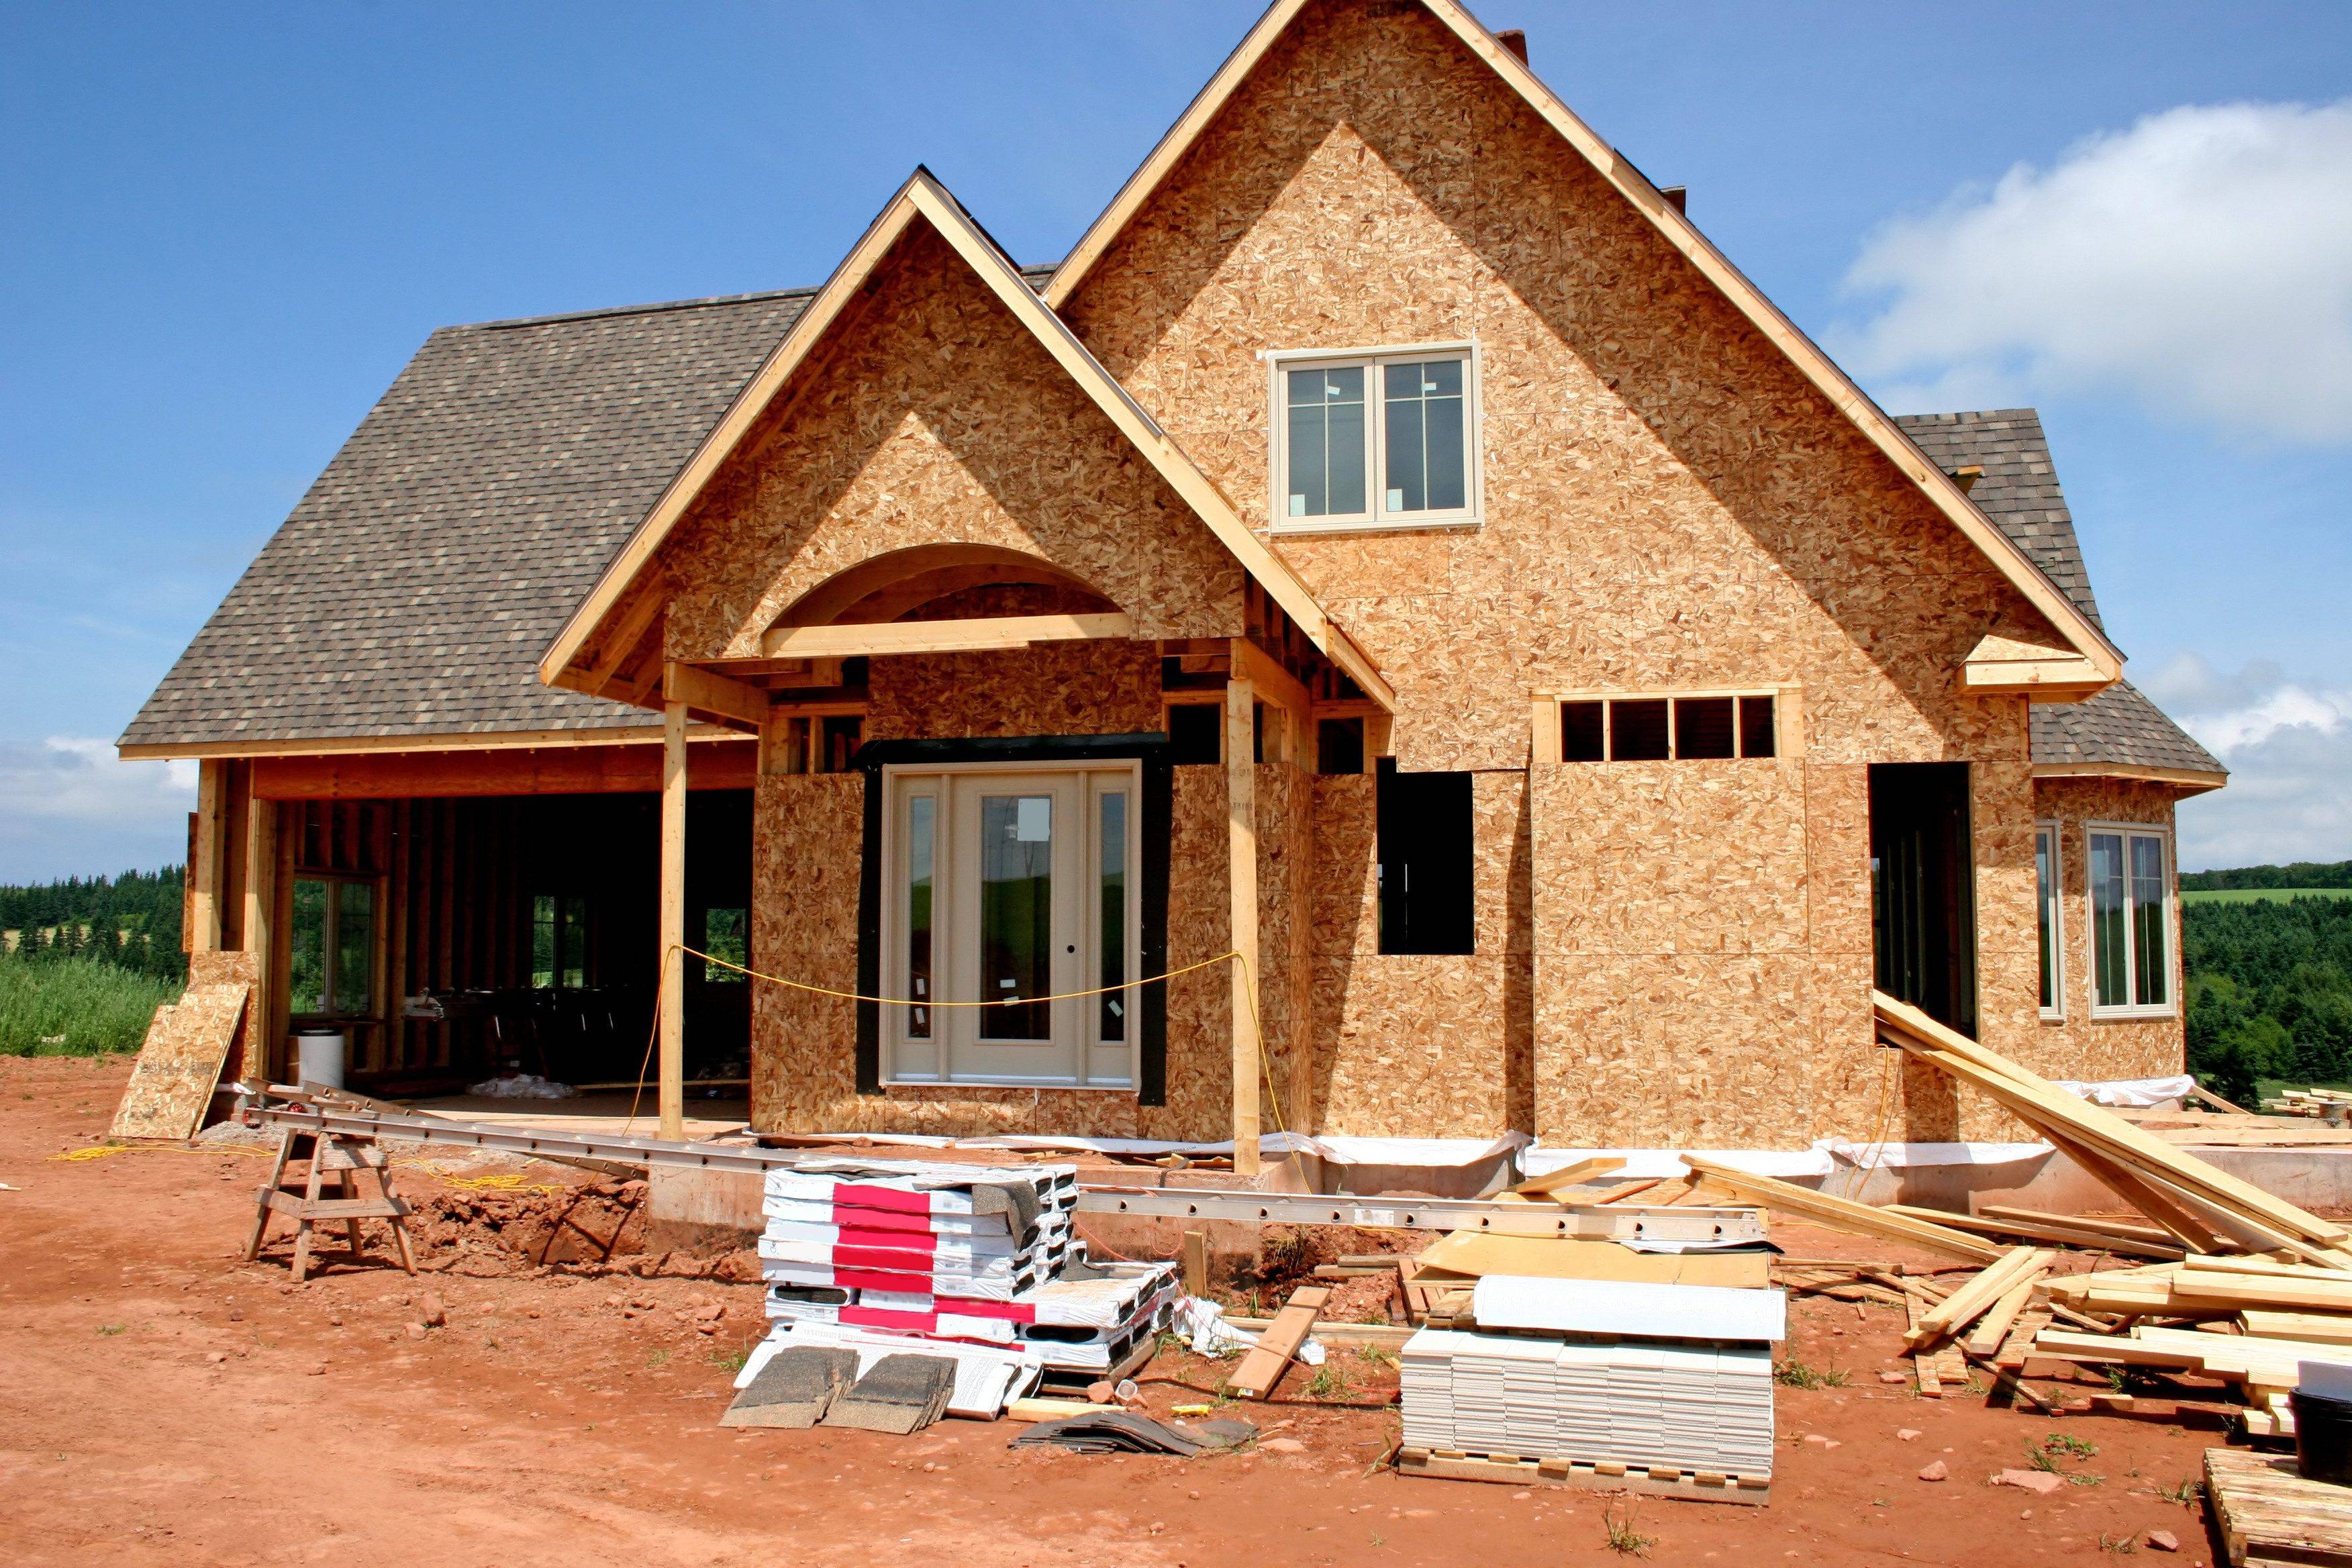 Построить или купить дом: плюсы и минусы обоих вариантов